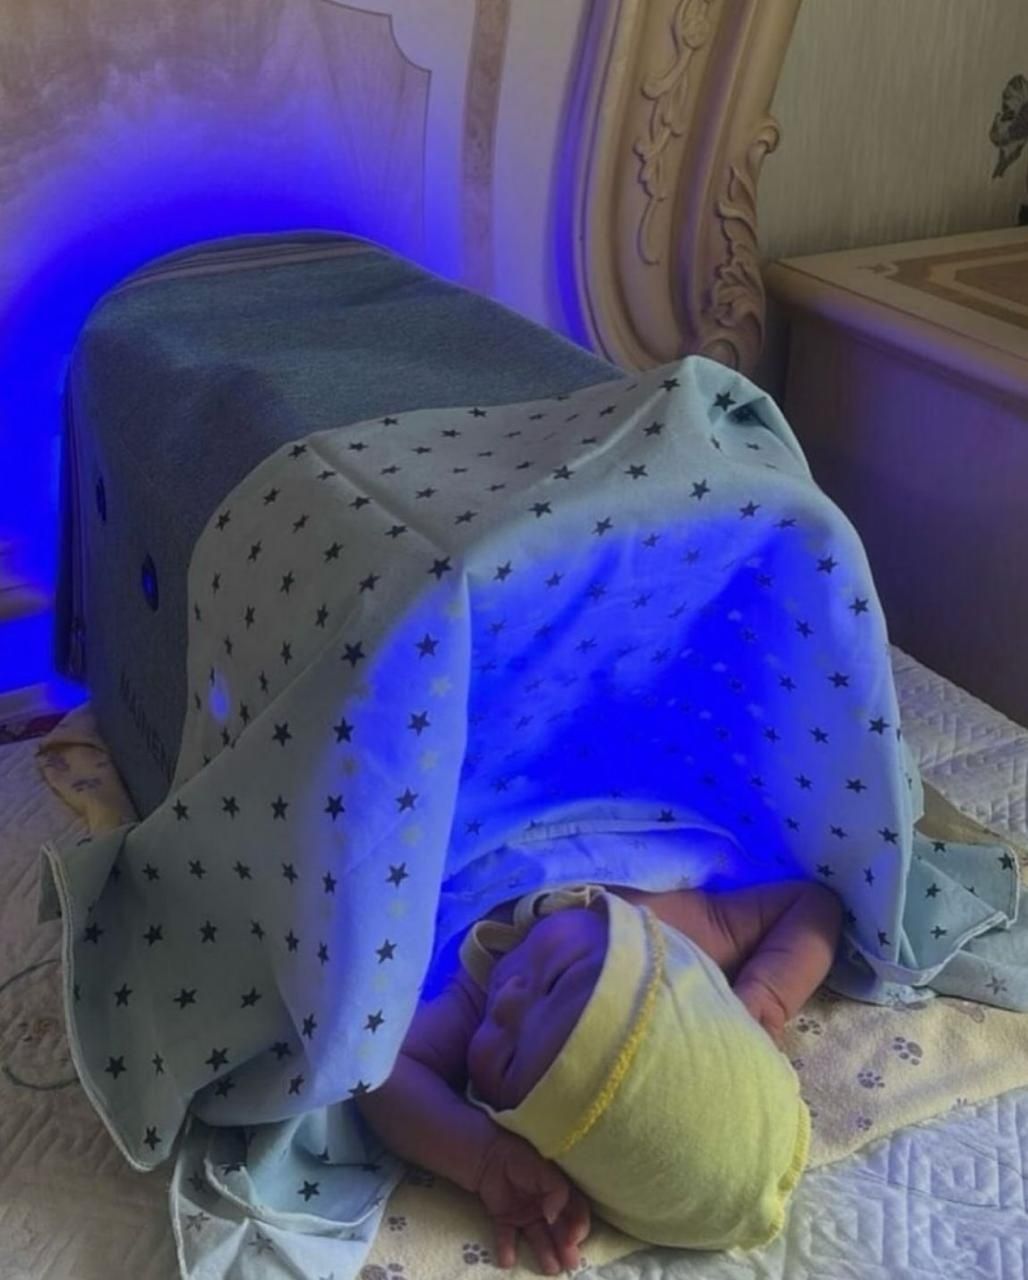 Фотолампа от желтухи для новорожденных